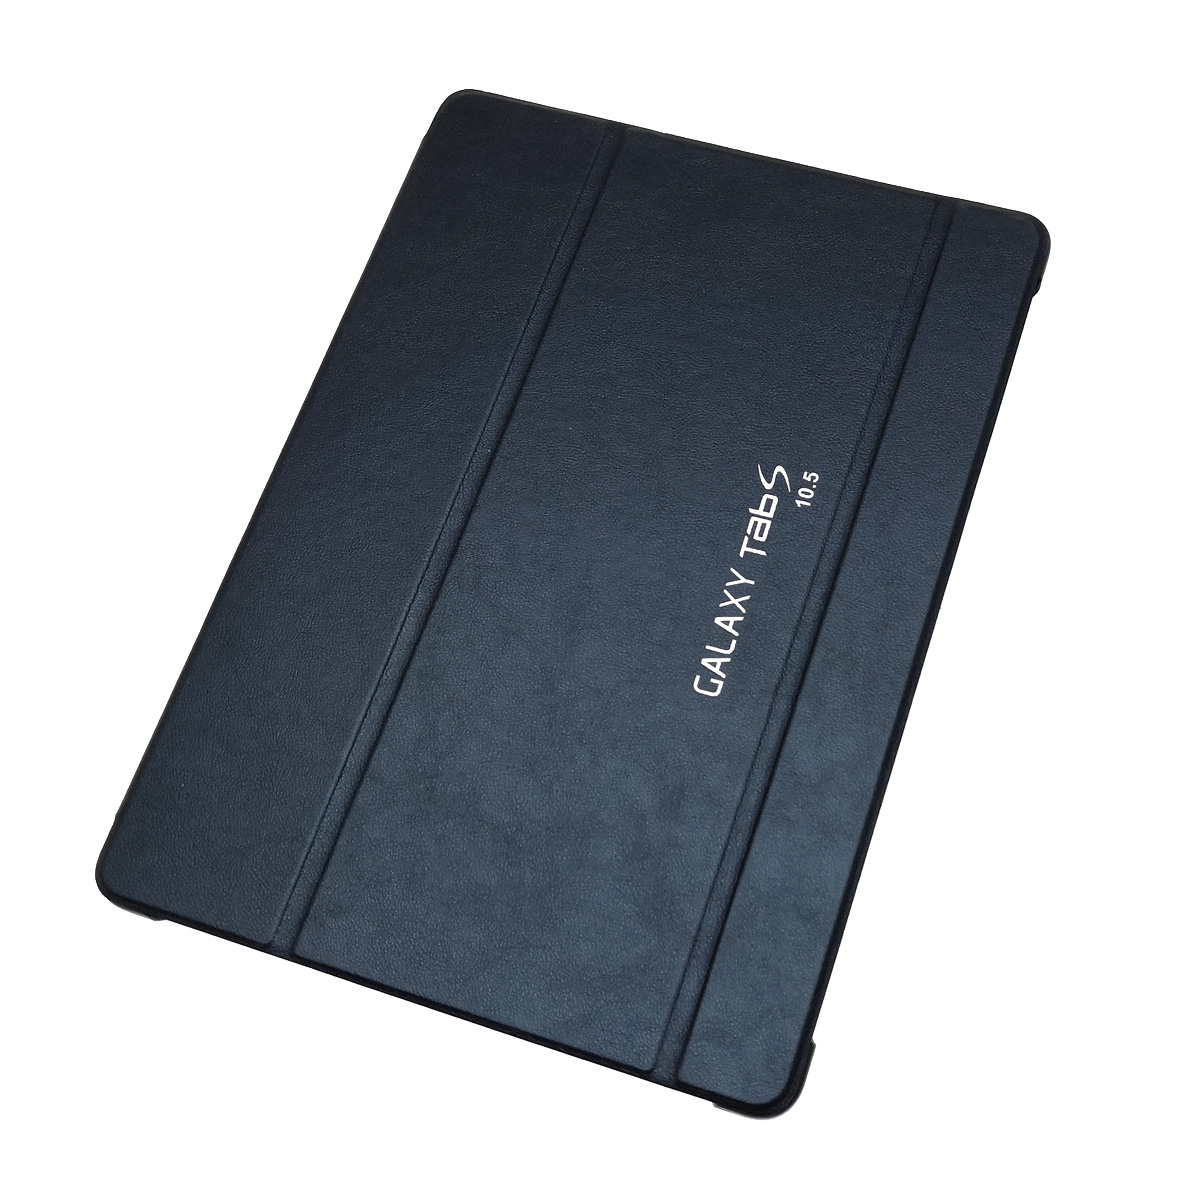 Чехол книжка для SAMSUNG Galaxy Tab S 10.5 (SM-T800, T805), цвет синий.